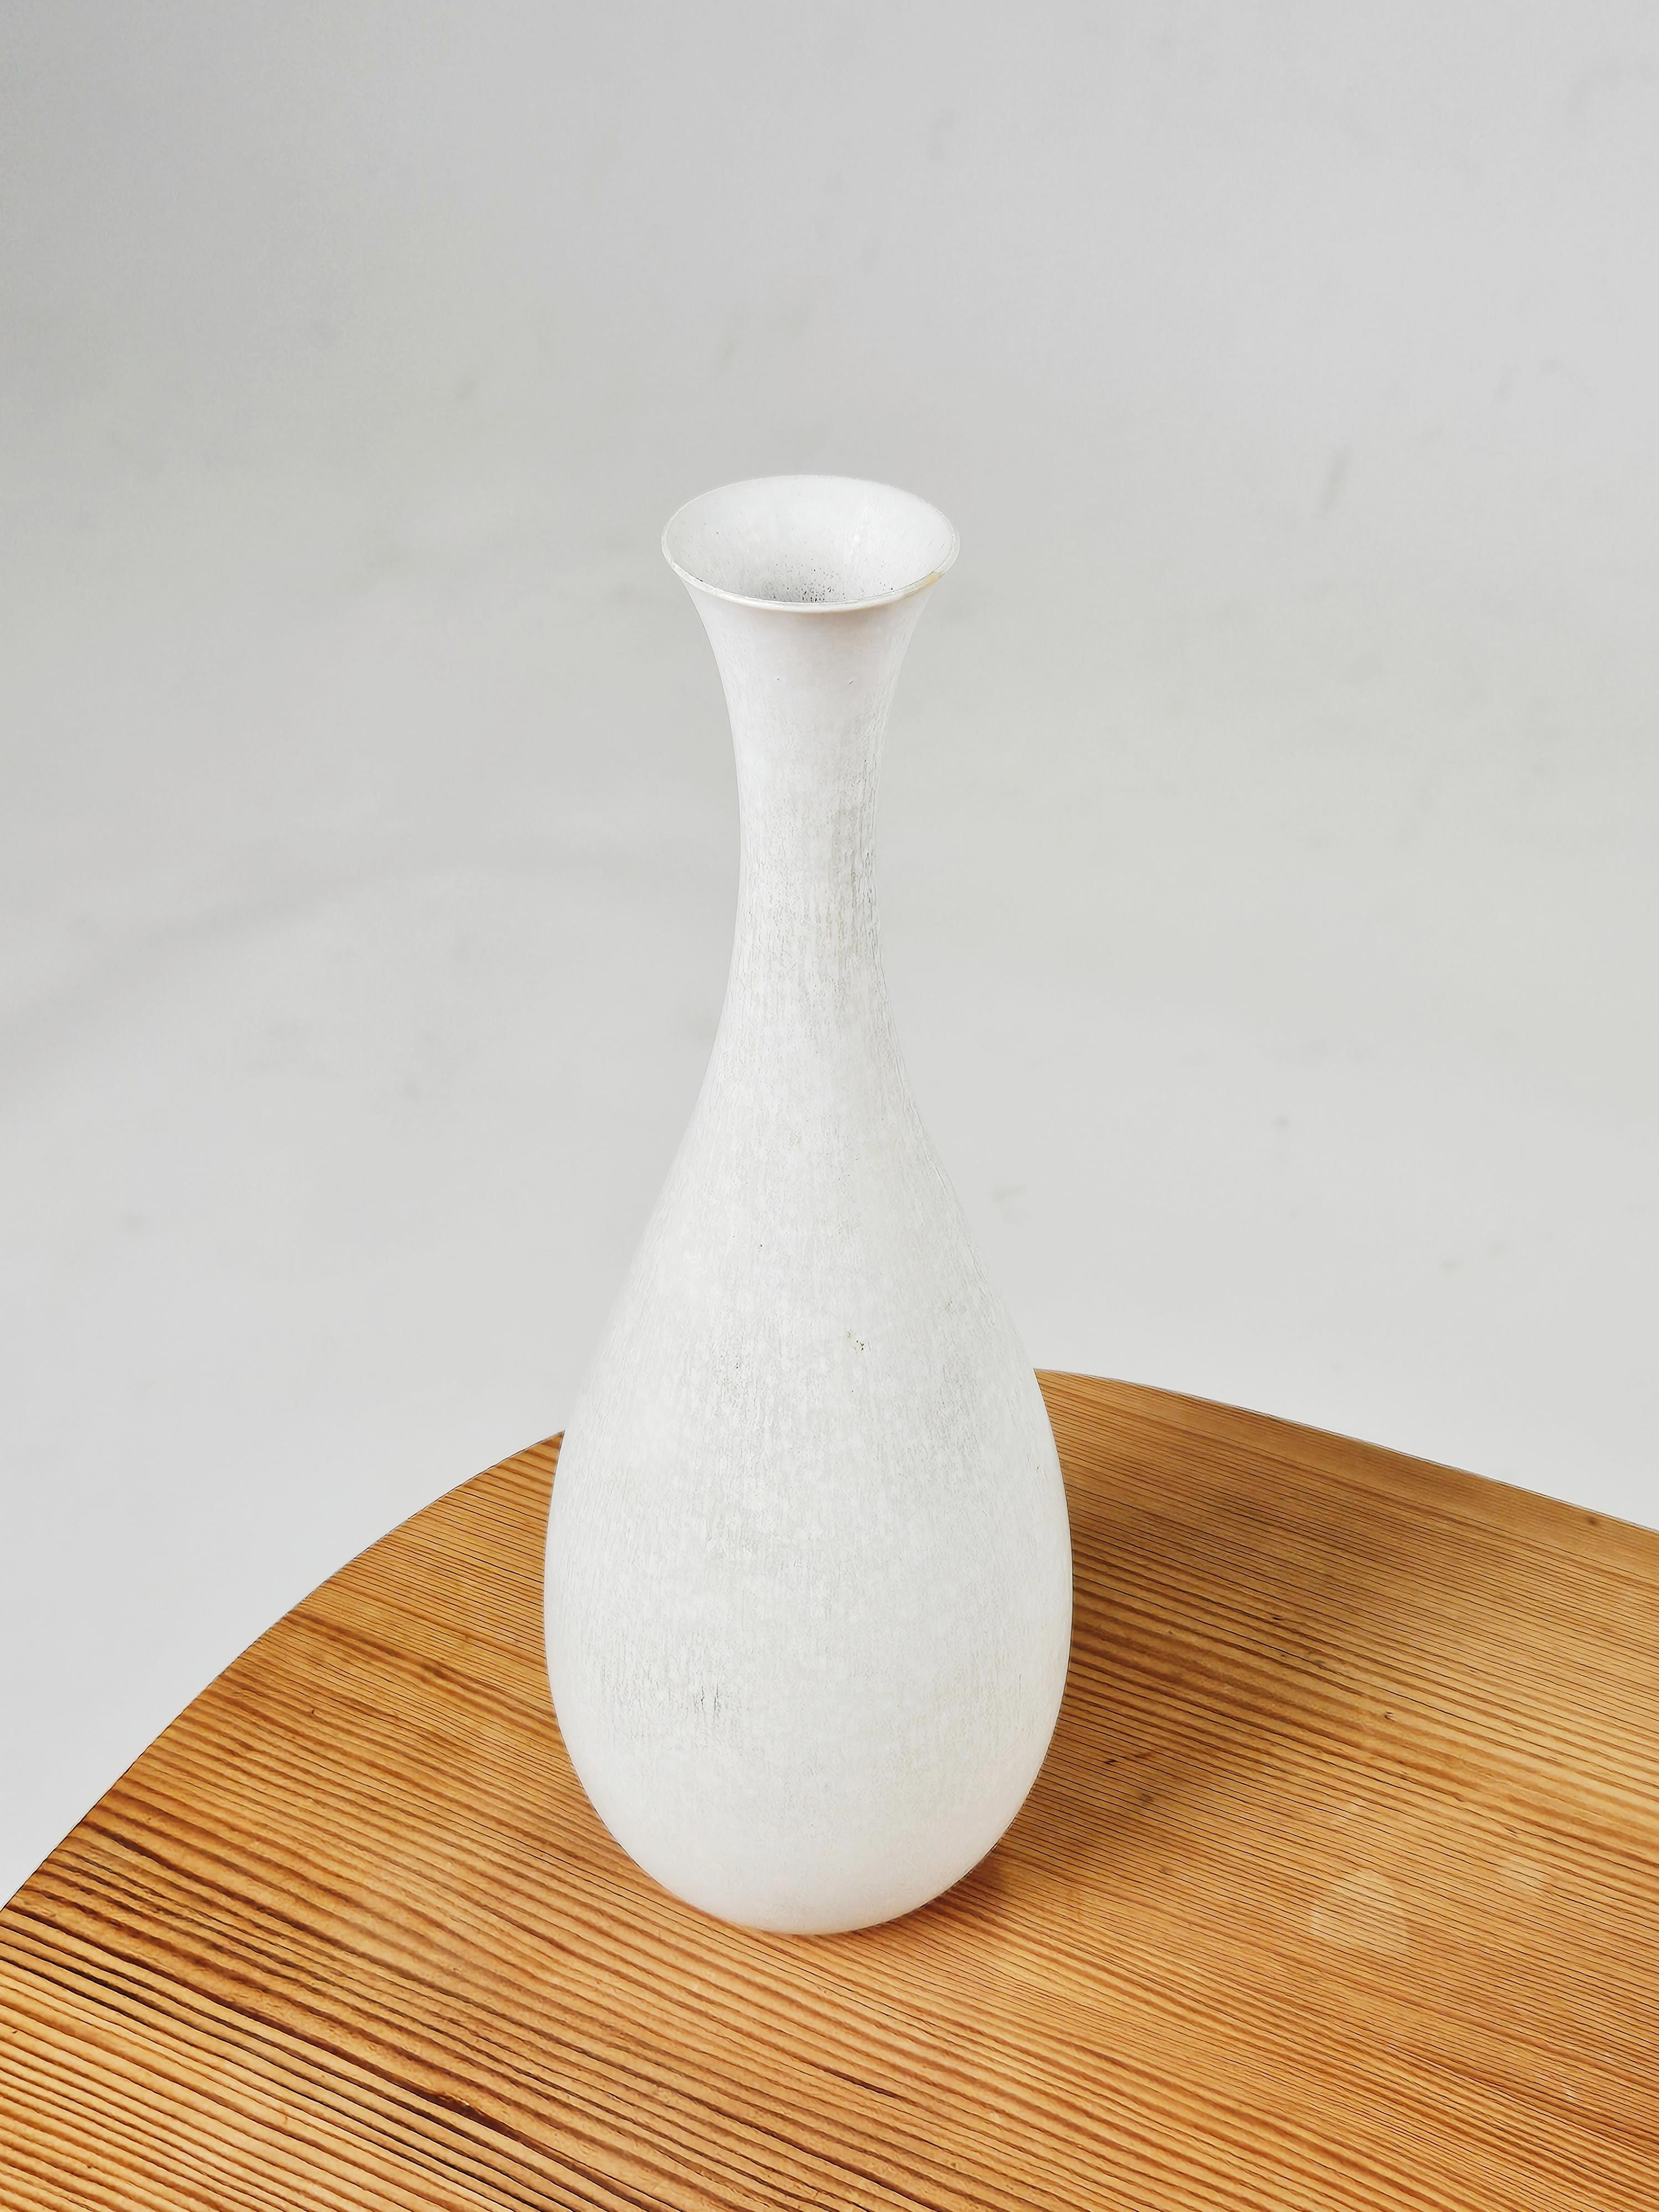 Magnifique vase en grès blanc conçu par Carl-Harry Stålhane pour Rörstrand, Suède, années 1960. 

S'accorde parfaitement avec d'autres objets The Modern Scandinavian de cette période. 

Modèle rare avec glaçure blanche très recherchée.

Quelques